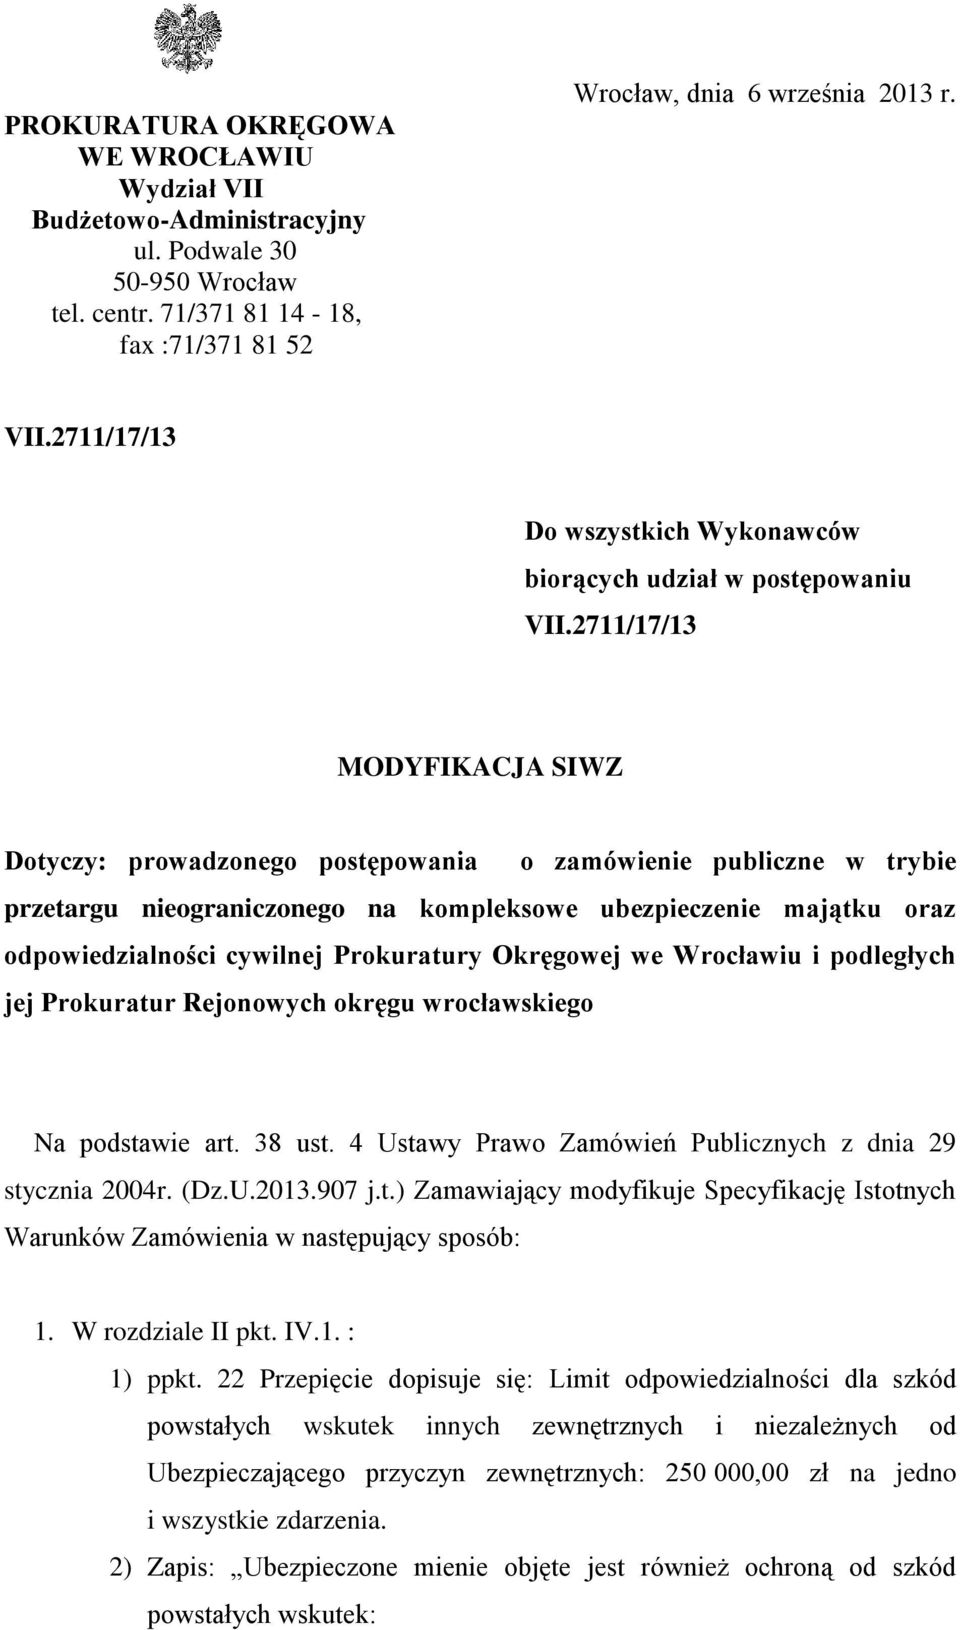 Prokuratury Okręgowej we Wrocławiu i podległych jej Prokuratur Rejonowych okręgu wrocławskiego Na podstawie art. 38 ust. 4 Ustawy Prawo Zamówień Publicznych z dnia 29 stycznia 2004r. (Dz.U.2013.907 j.